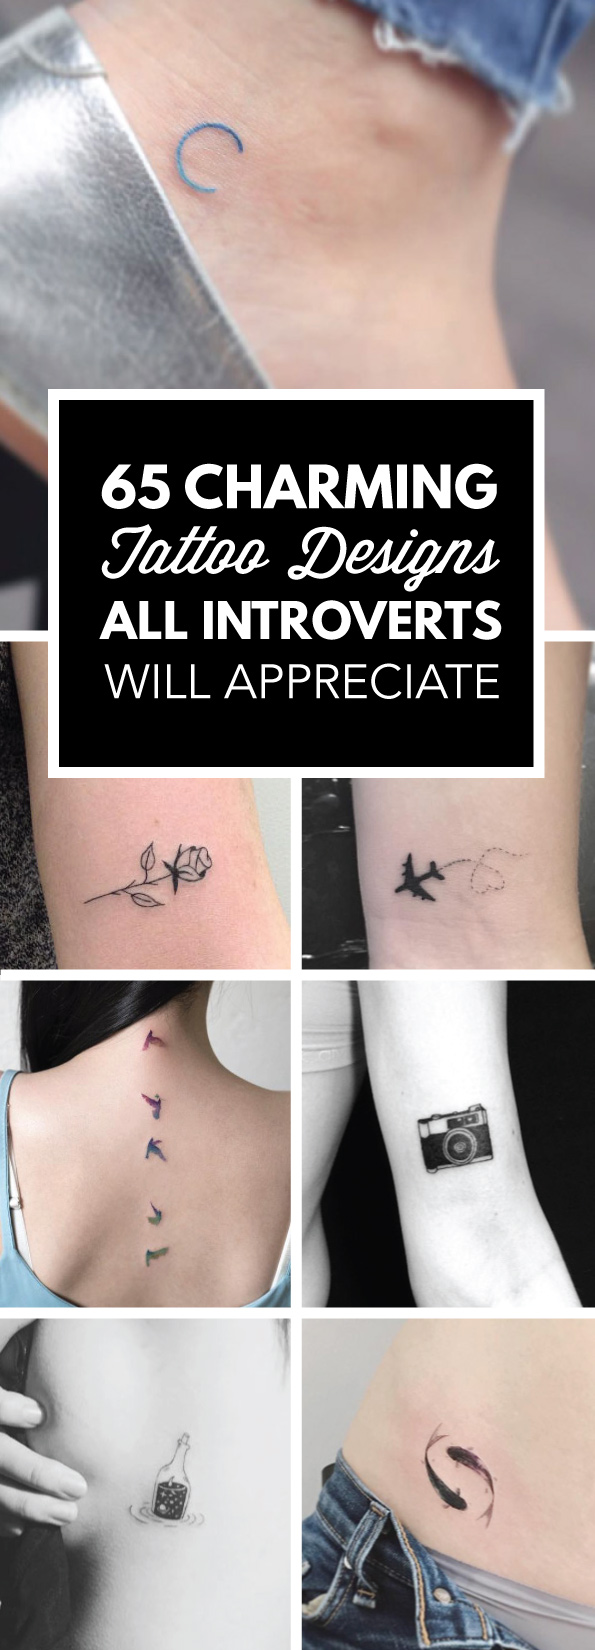 65 Charming Tattoo Designs All Introverts Will Appreciate | TattooBlend